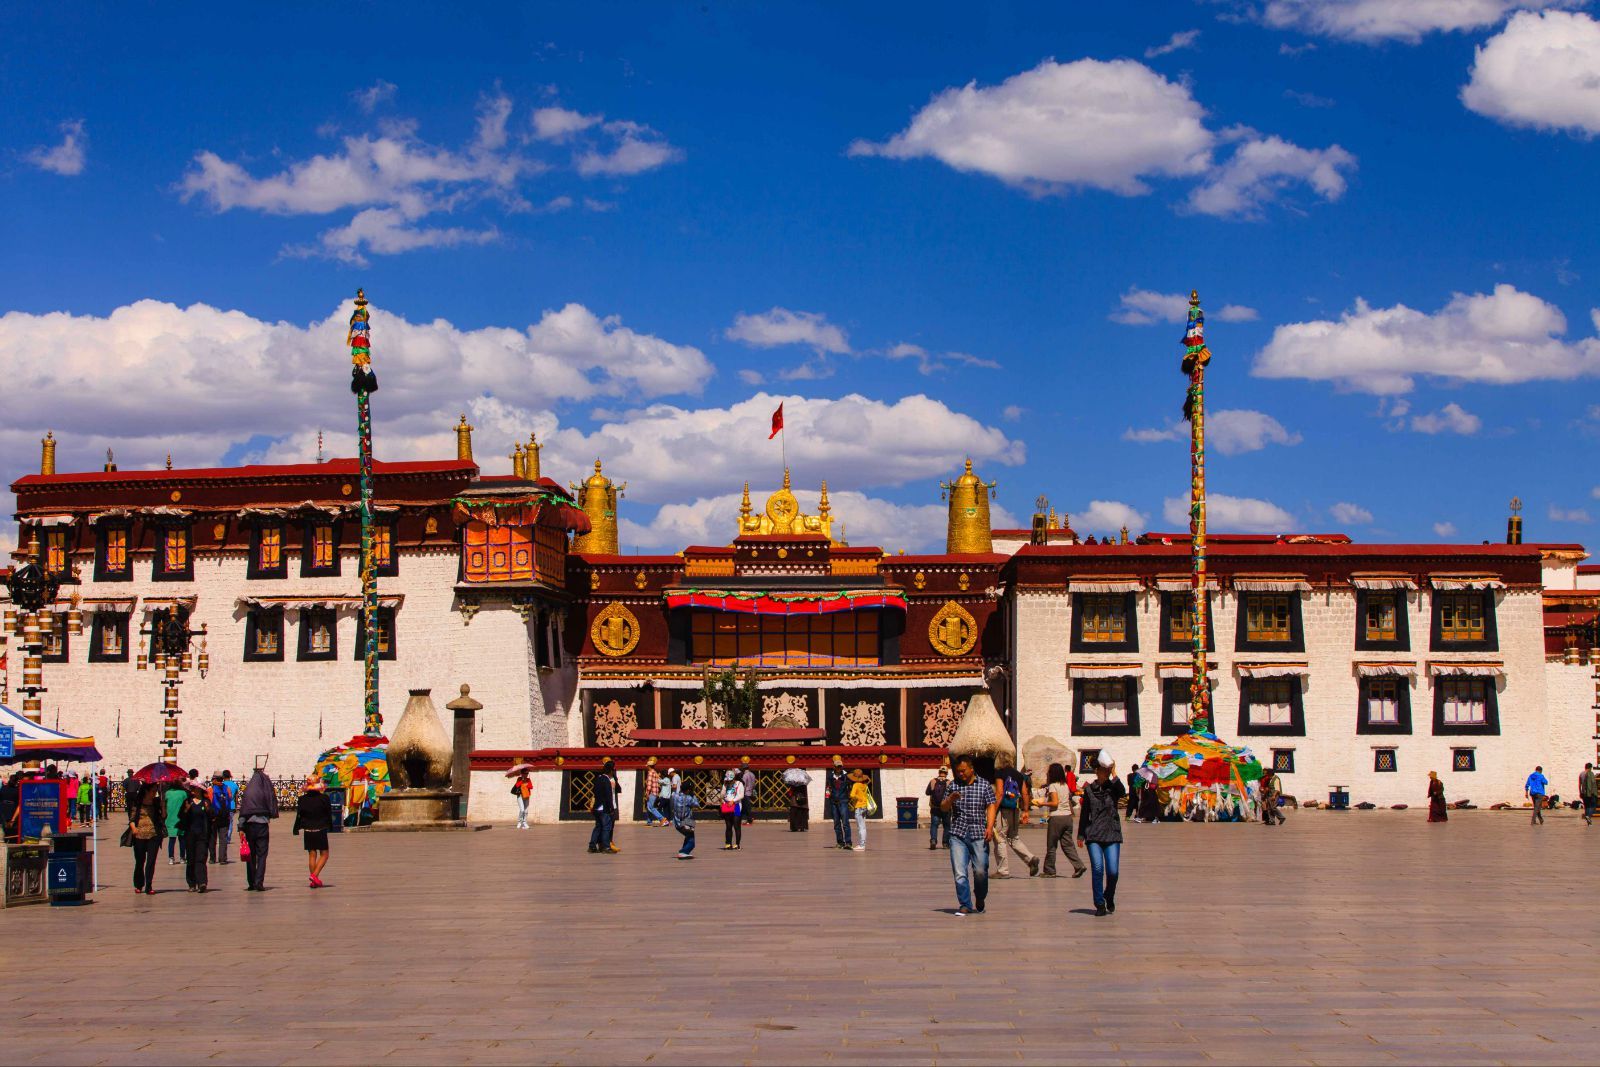 大昭寺布达拉宫被称为世界屋脊明珠,它是拉萨乃至青藏高原的标志